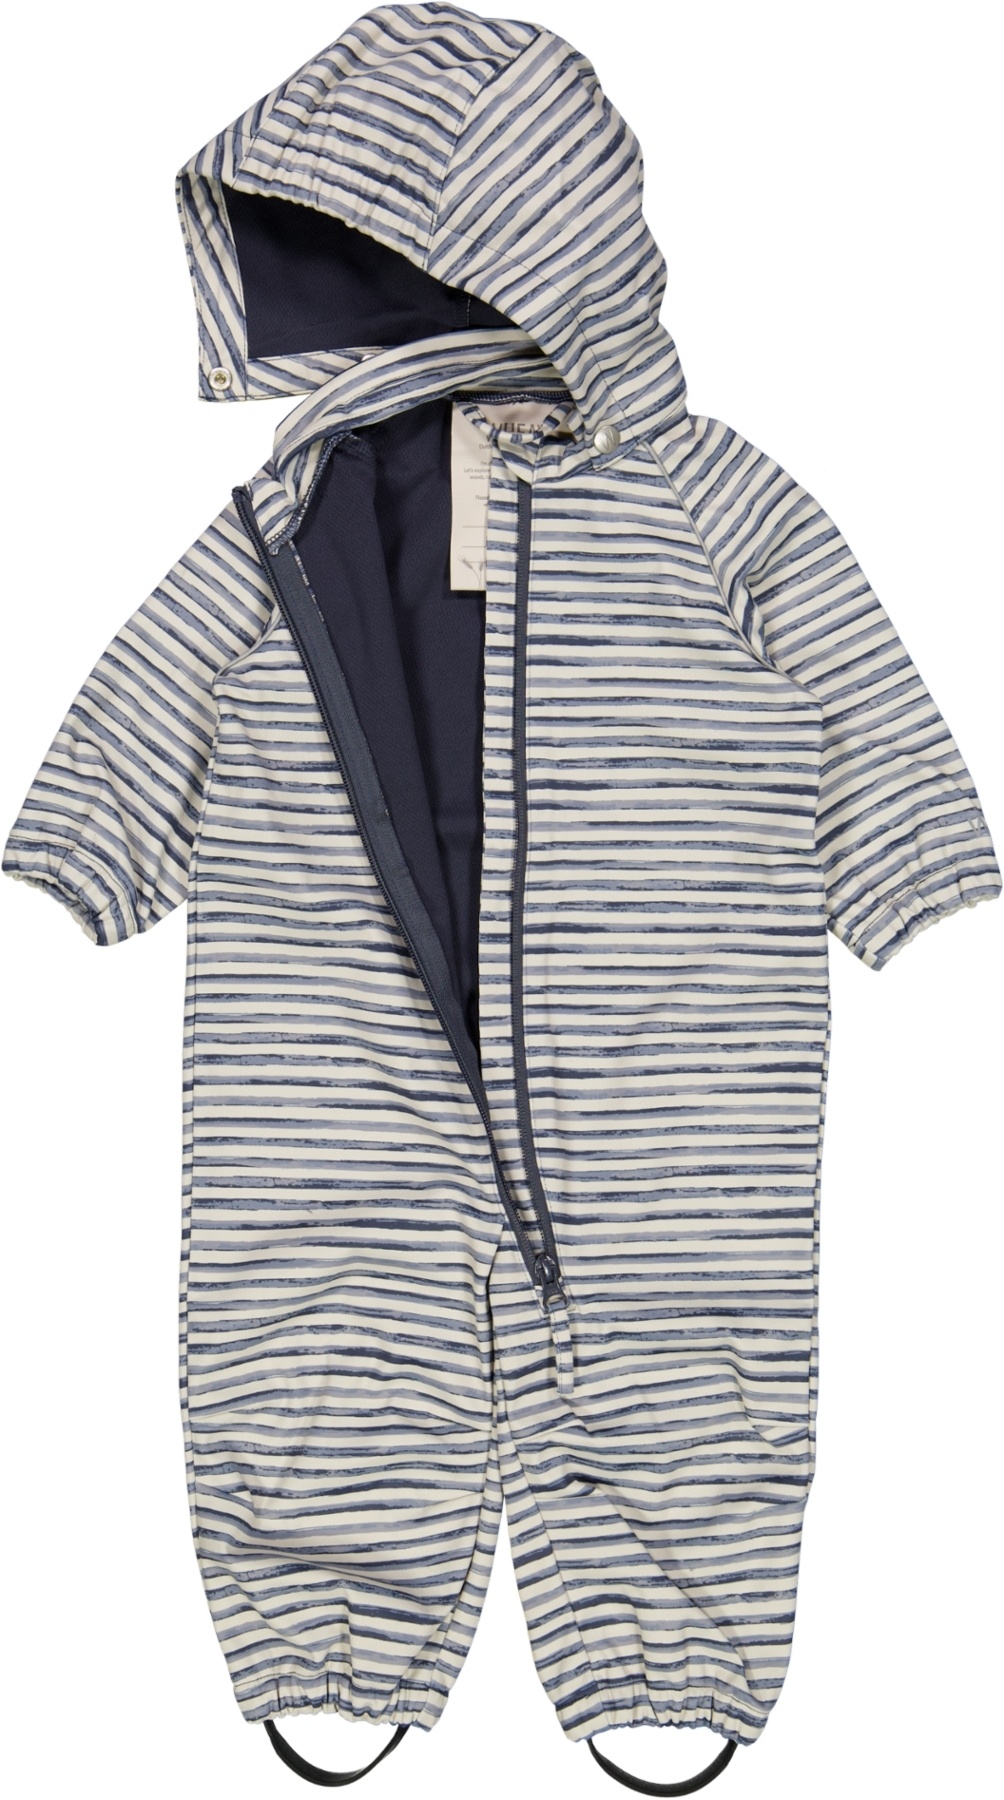 Wheat - Softshell Suit - Kit Stripe || Kids MT 74 MT 98 JUTTER & Co.